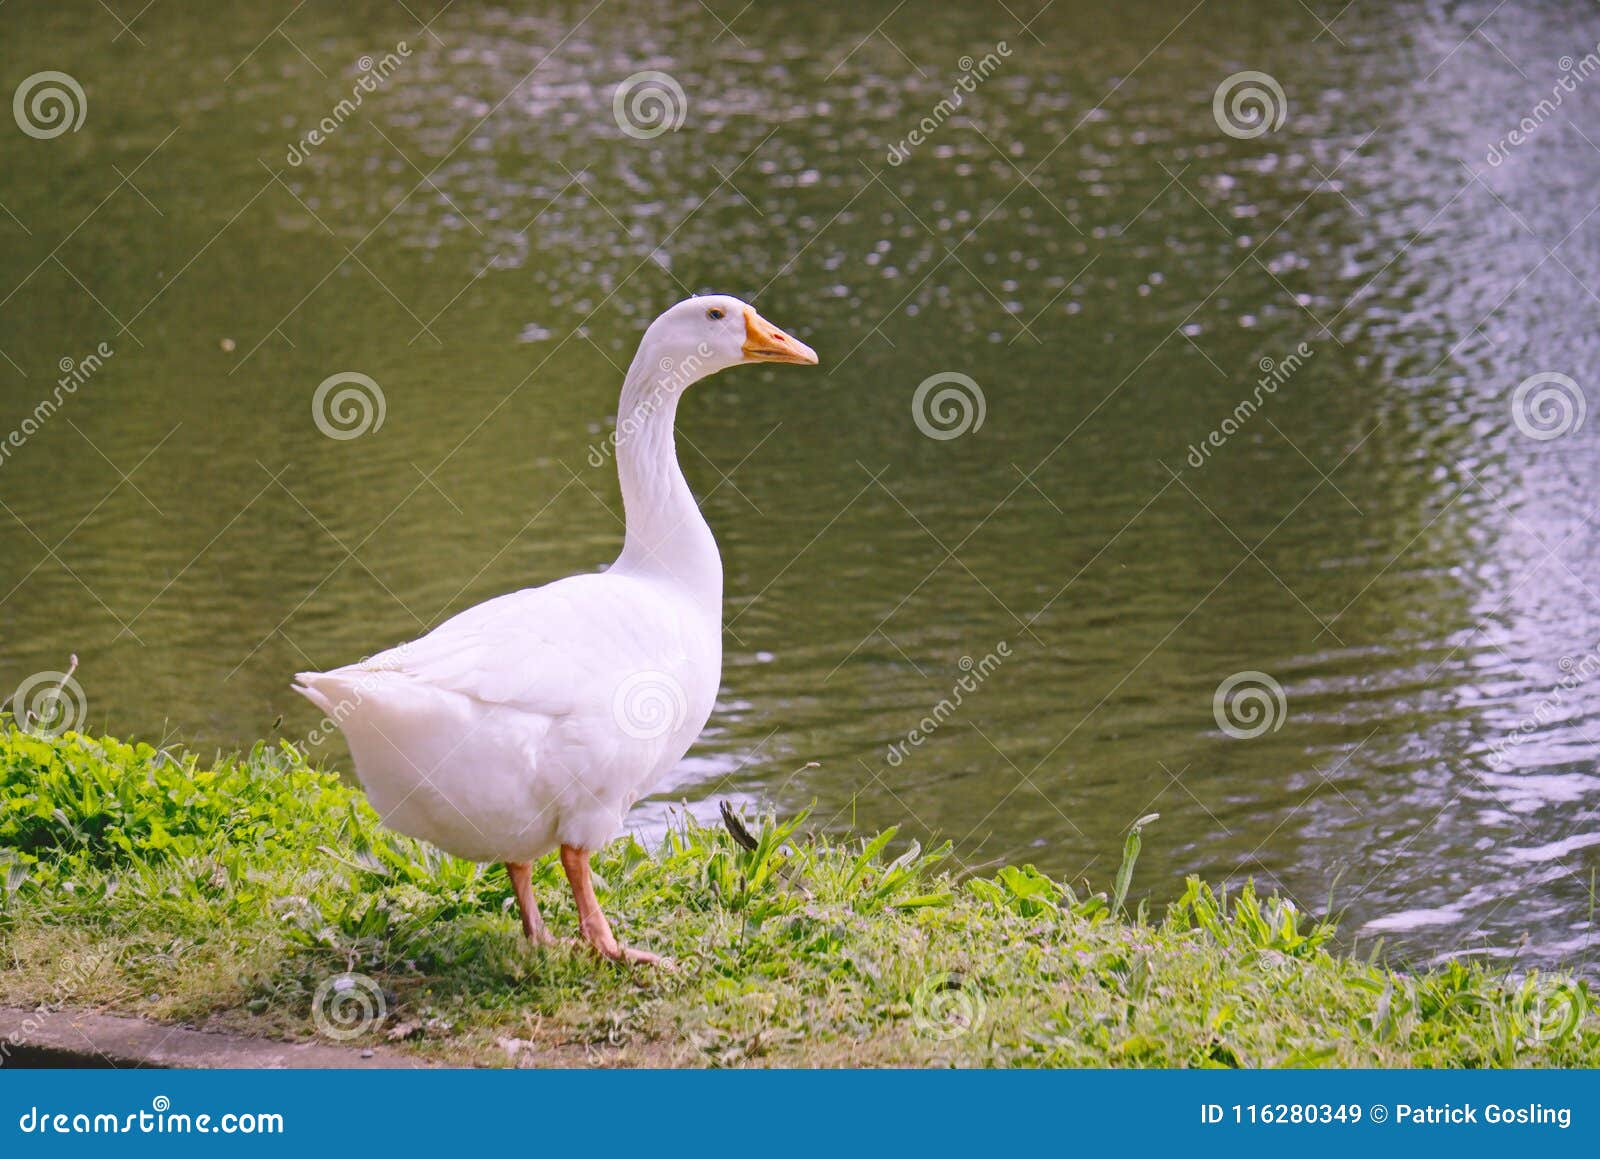 the white emden goose.